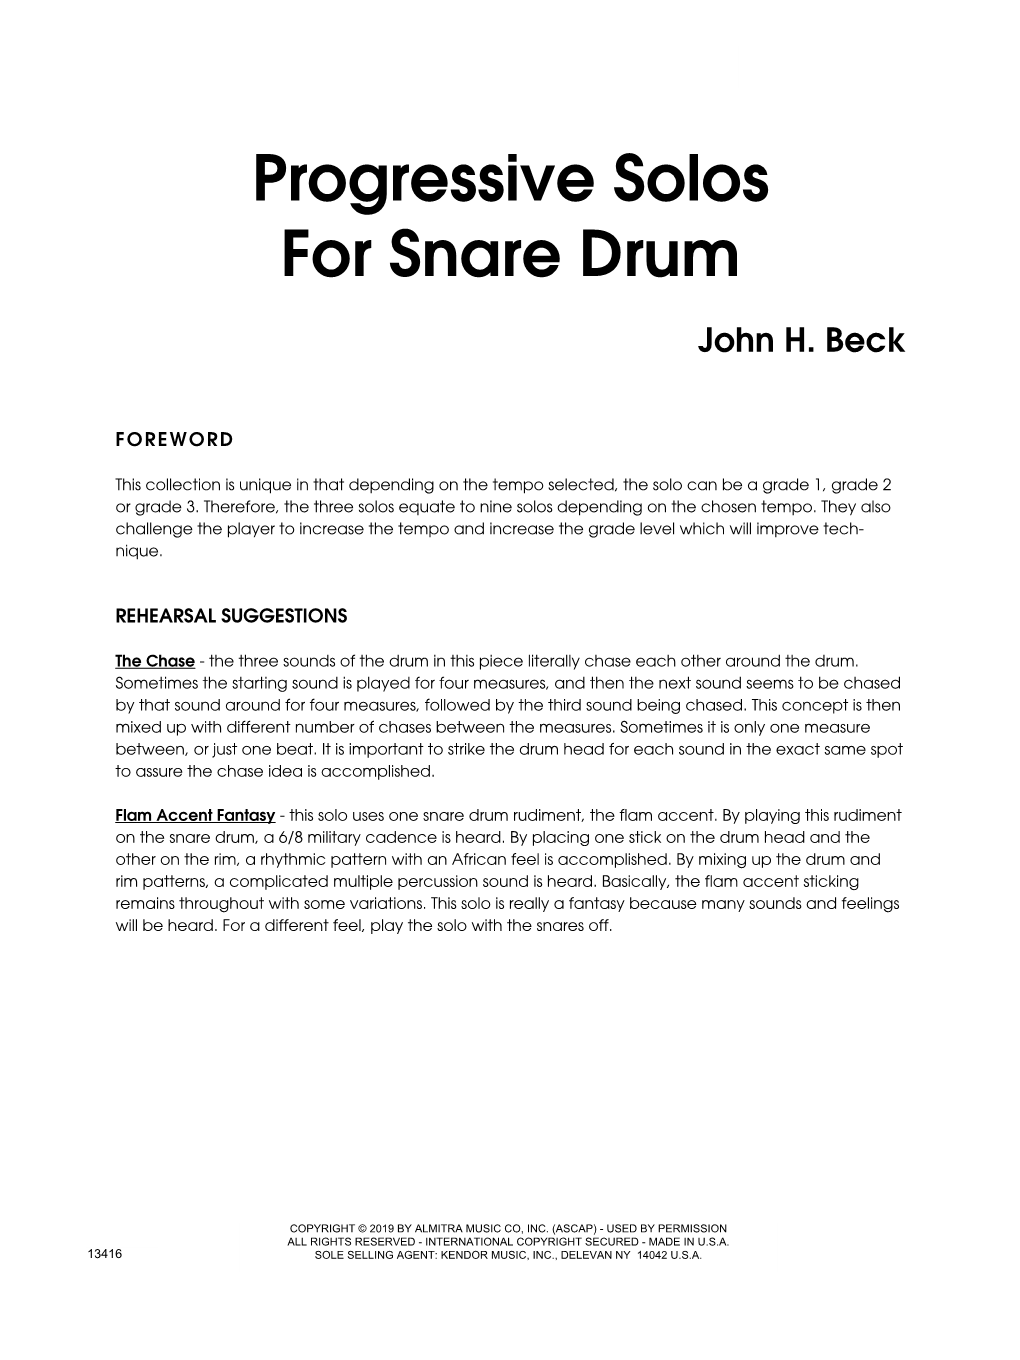 Progressive Solos for Snare Drum John H